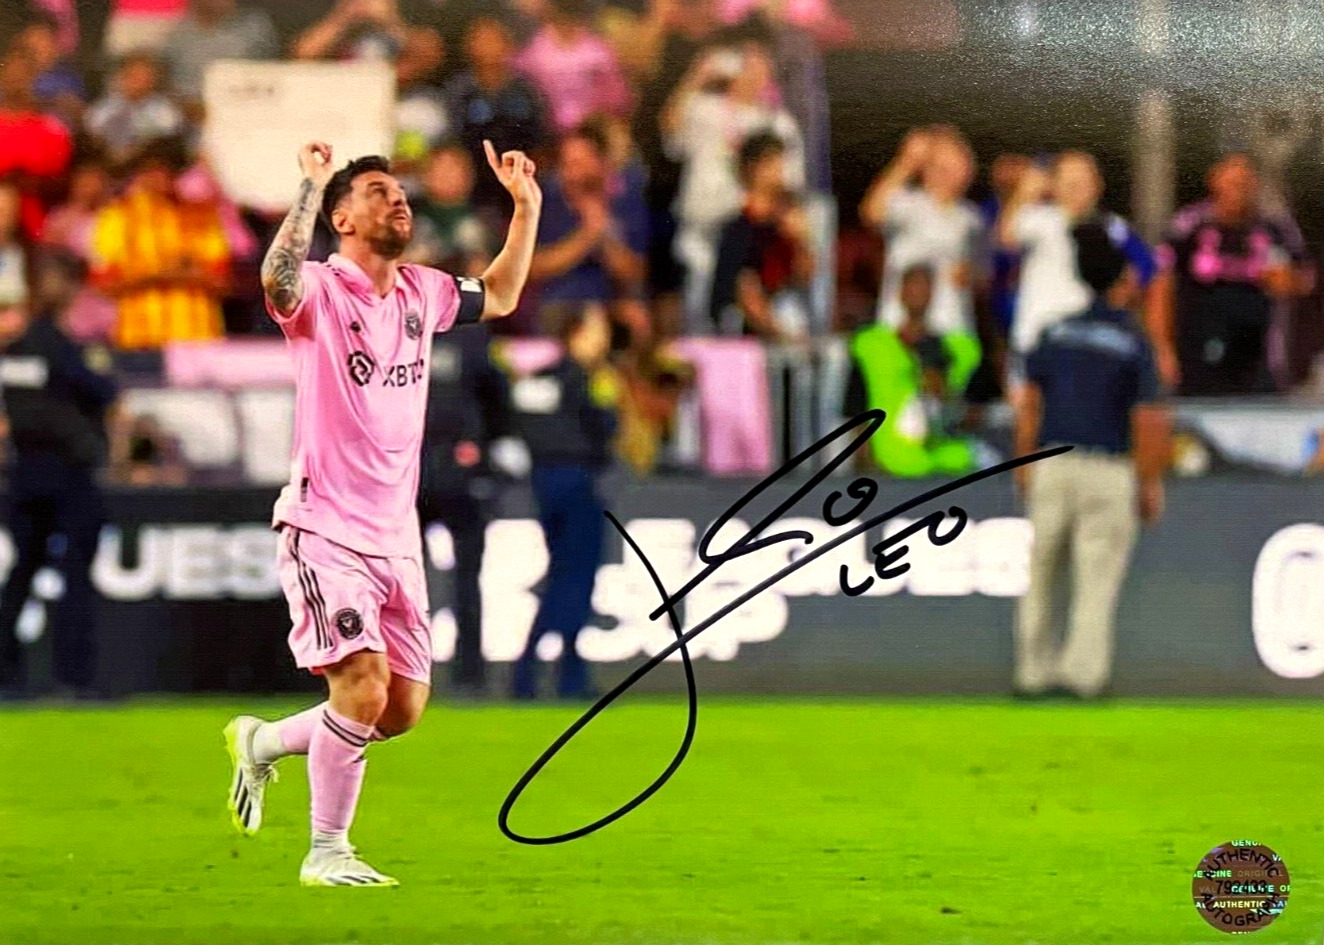 LIONEL MESSI Leo (Miami FC) Soccer Signed 7x5 in. Photo Original Autograph w/COA